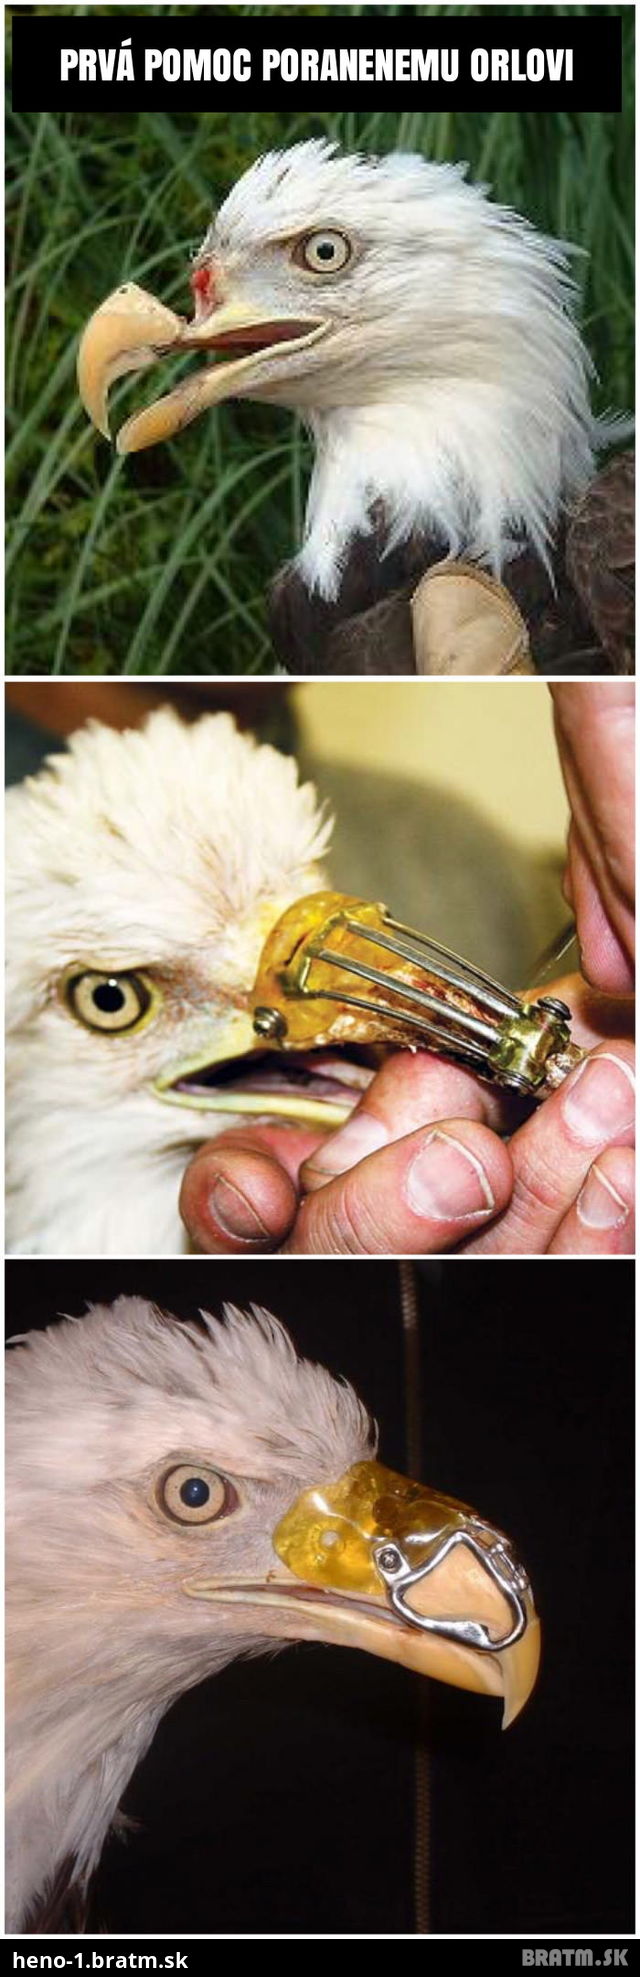 Záchrana orla, ktorý mal zlomený zobák. Detailné foto tu: